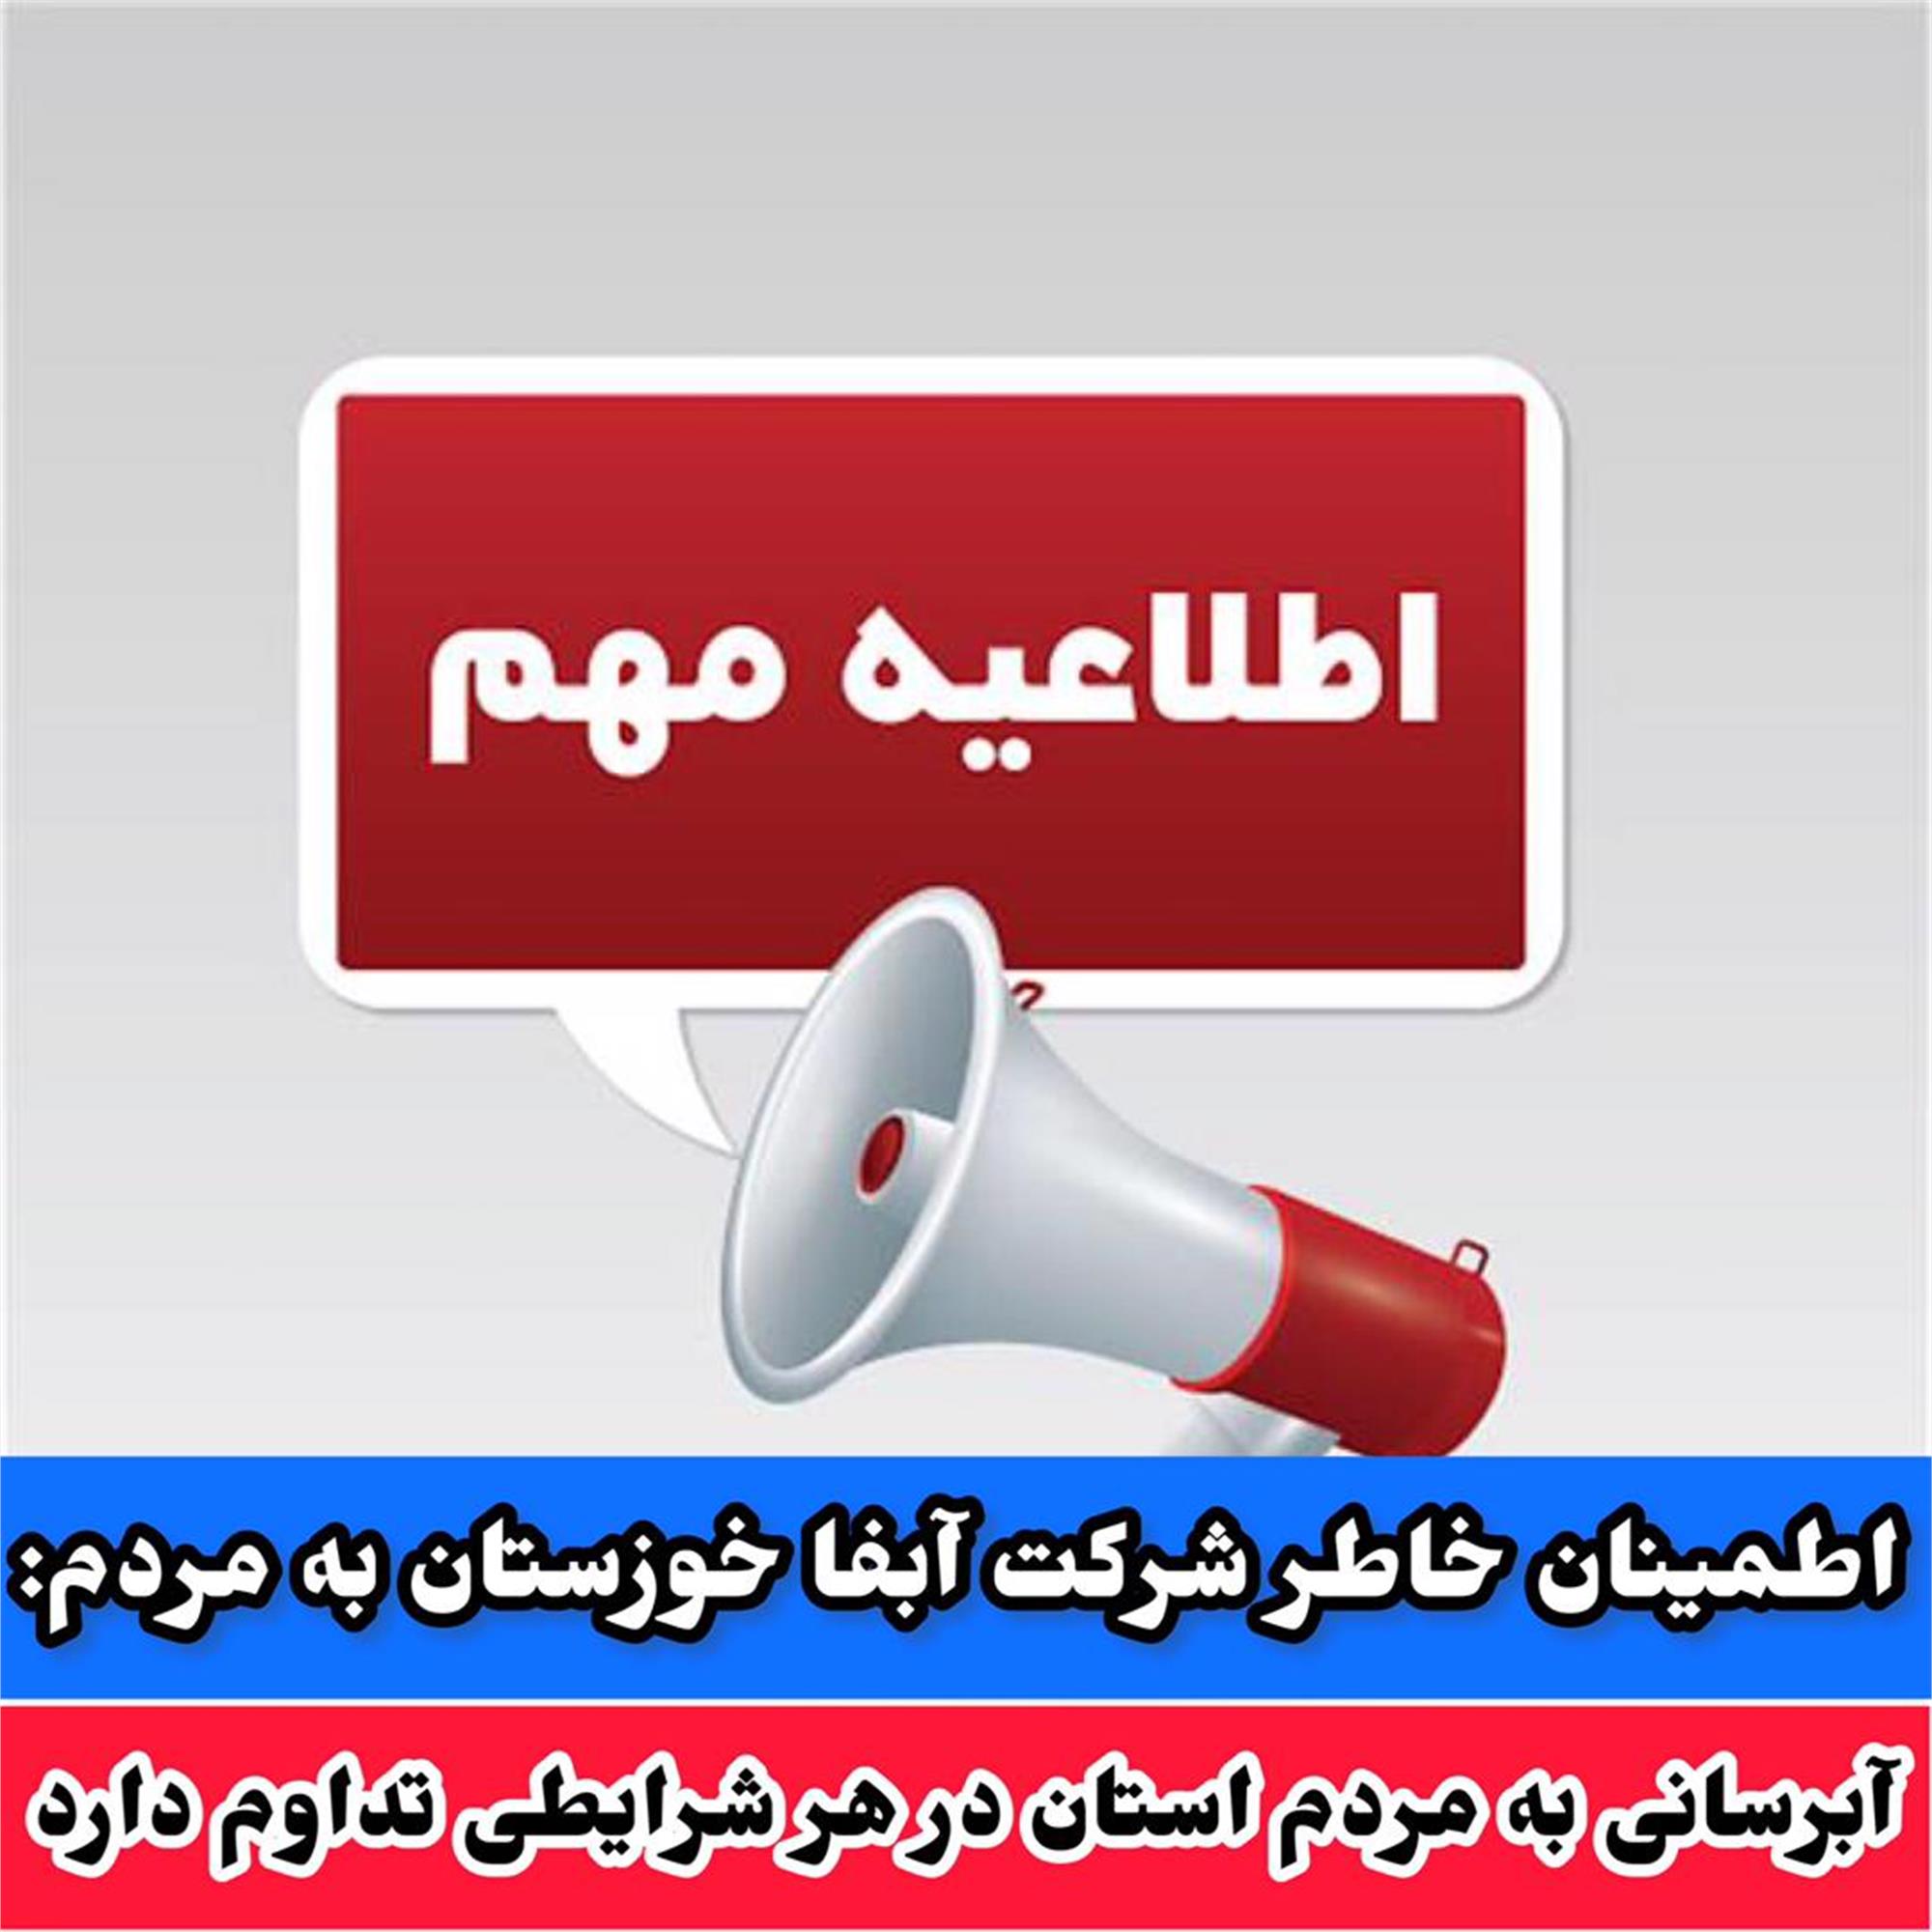 آبرسانی به مردم استان در هر شرایطی تداوم دارد/اطمینان خاطر شرکت آبفا خوزستان به مردم